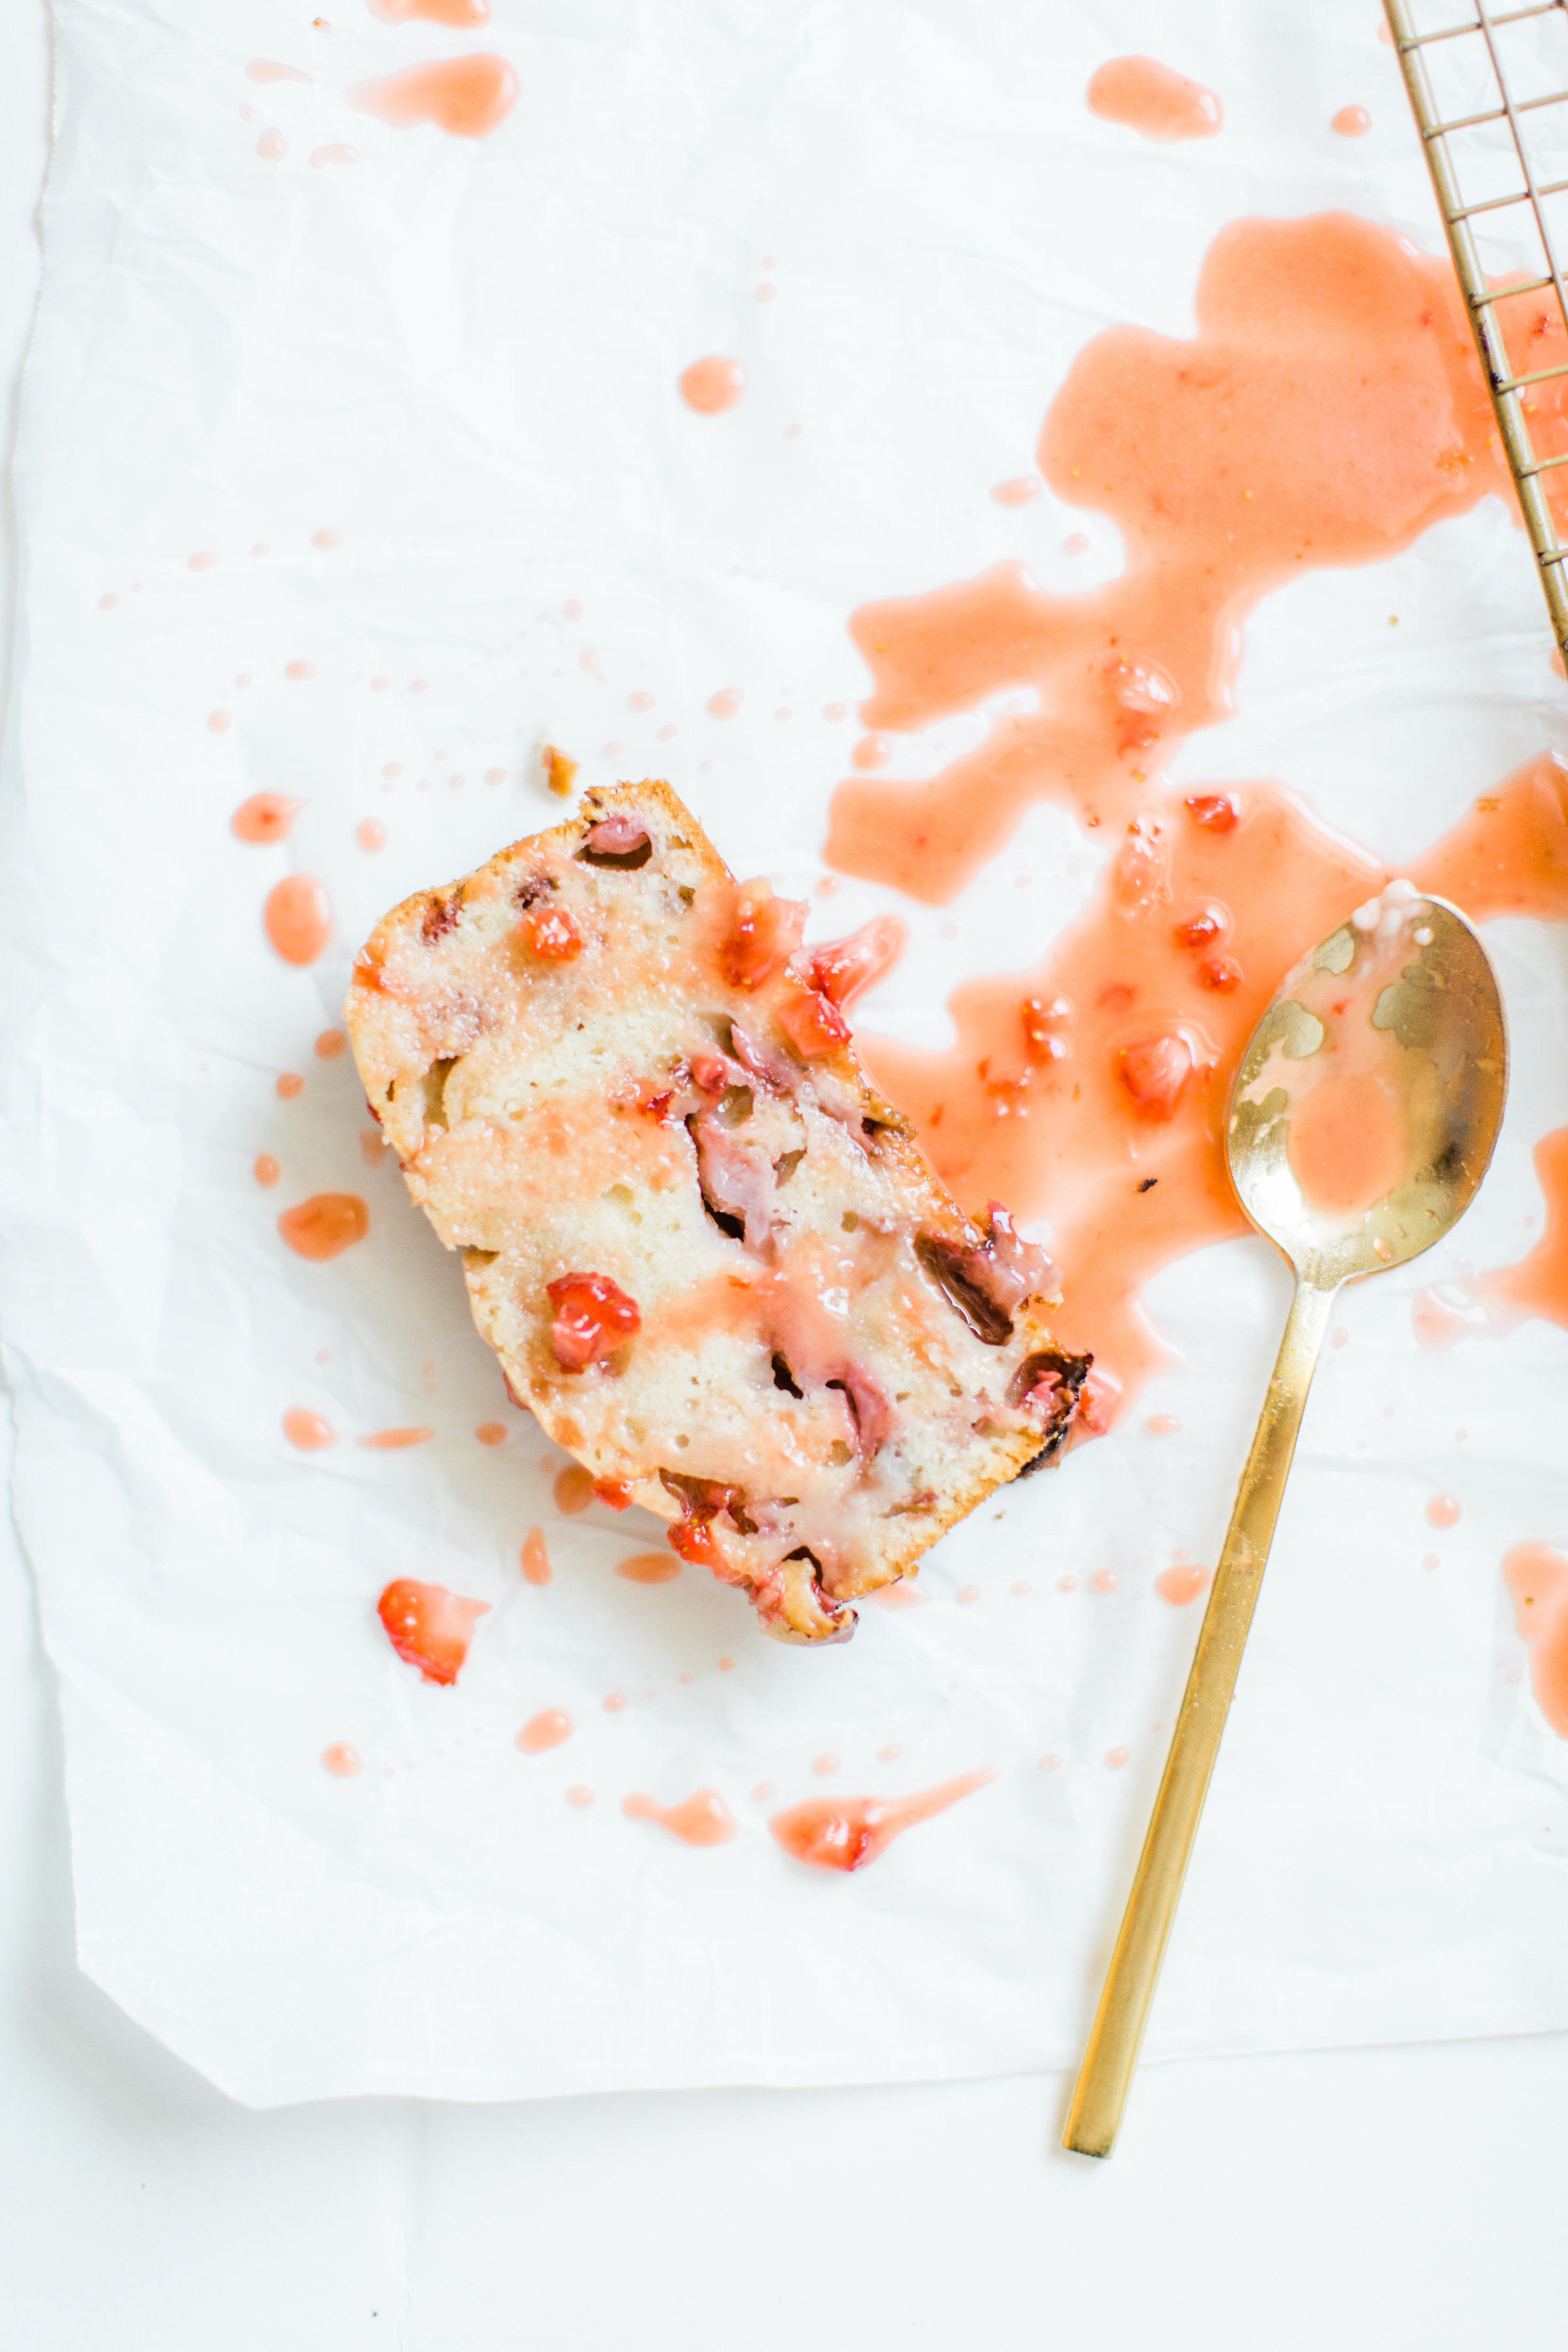 #strawberrybread #quickbread #dessert #strawberrycake Click through for the recipe. | glitterinc.com | @glitterinc